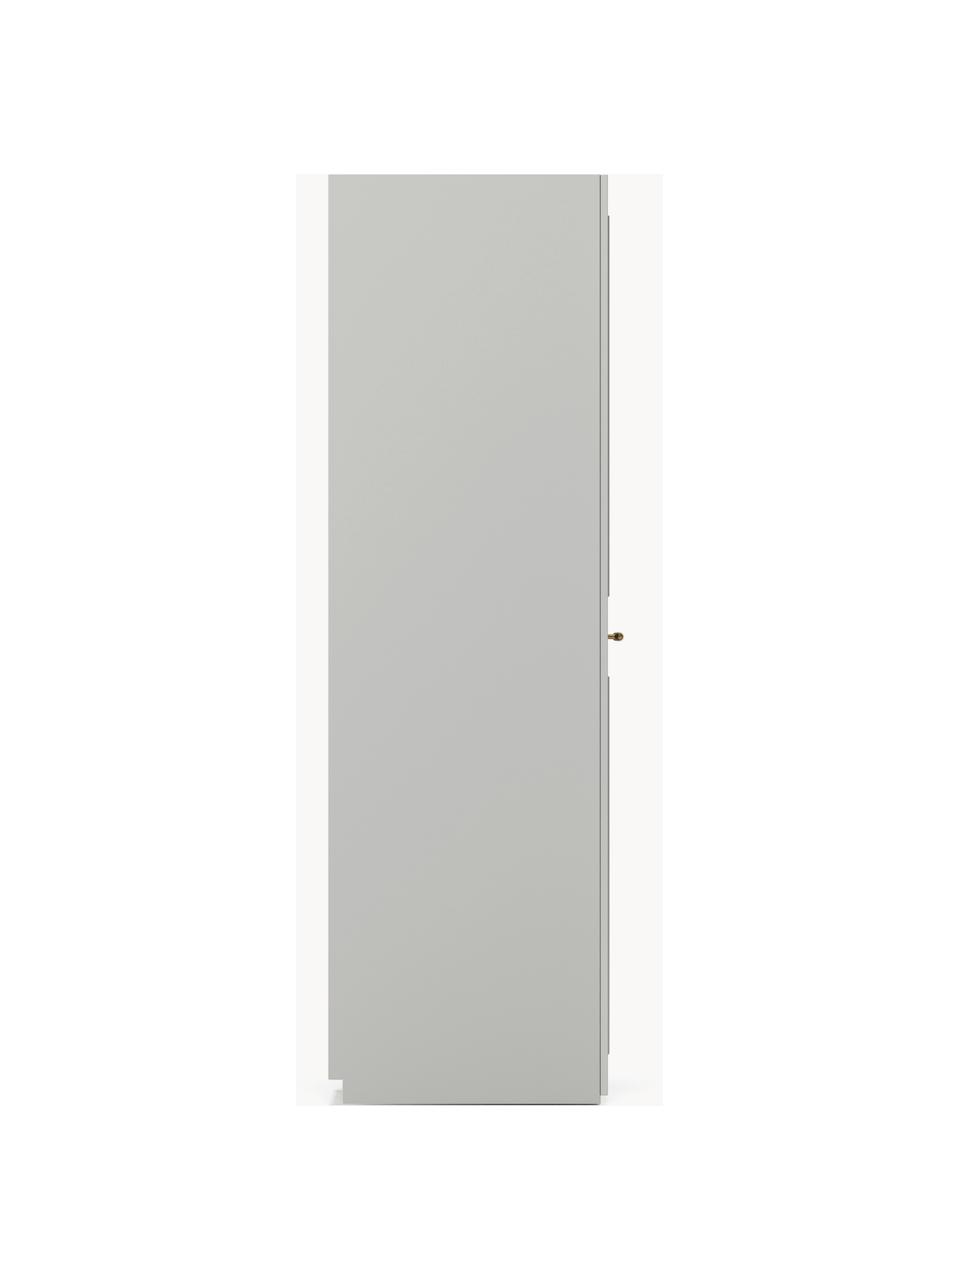 Szafa modułowa Charlotte, 2-drzwiowa, różne warianty, Korpus: płyta wiórowa pokryta mel, Szary, S 100 x W 200 cm, Basic